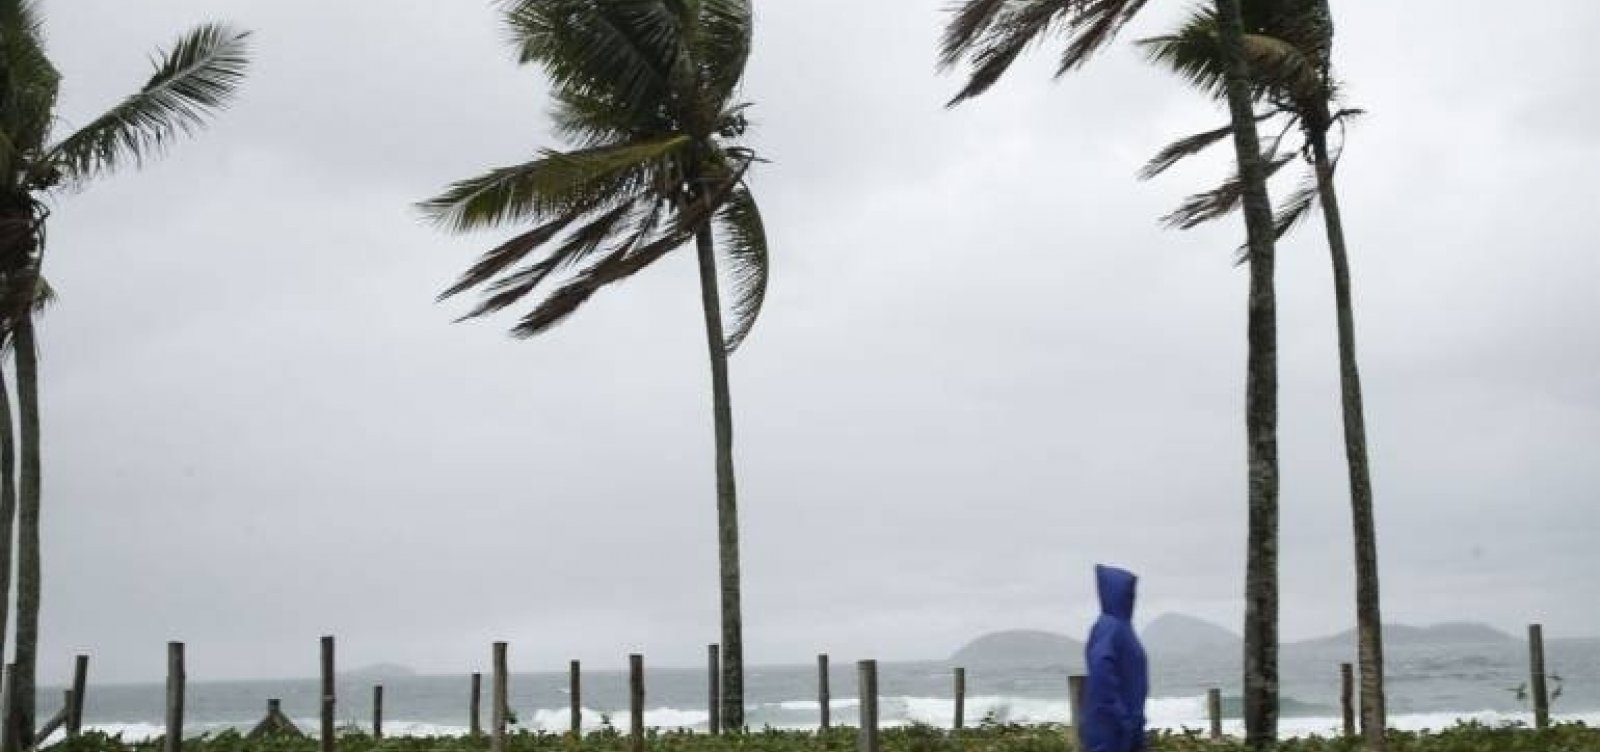 Marinha emite alerta de mau tempo com ventos fortes de até 60 km/h no litoral da Bahia; confira a previsão para SAJ